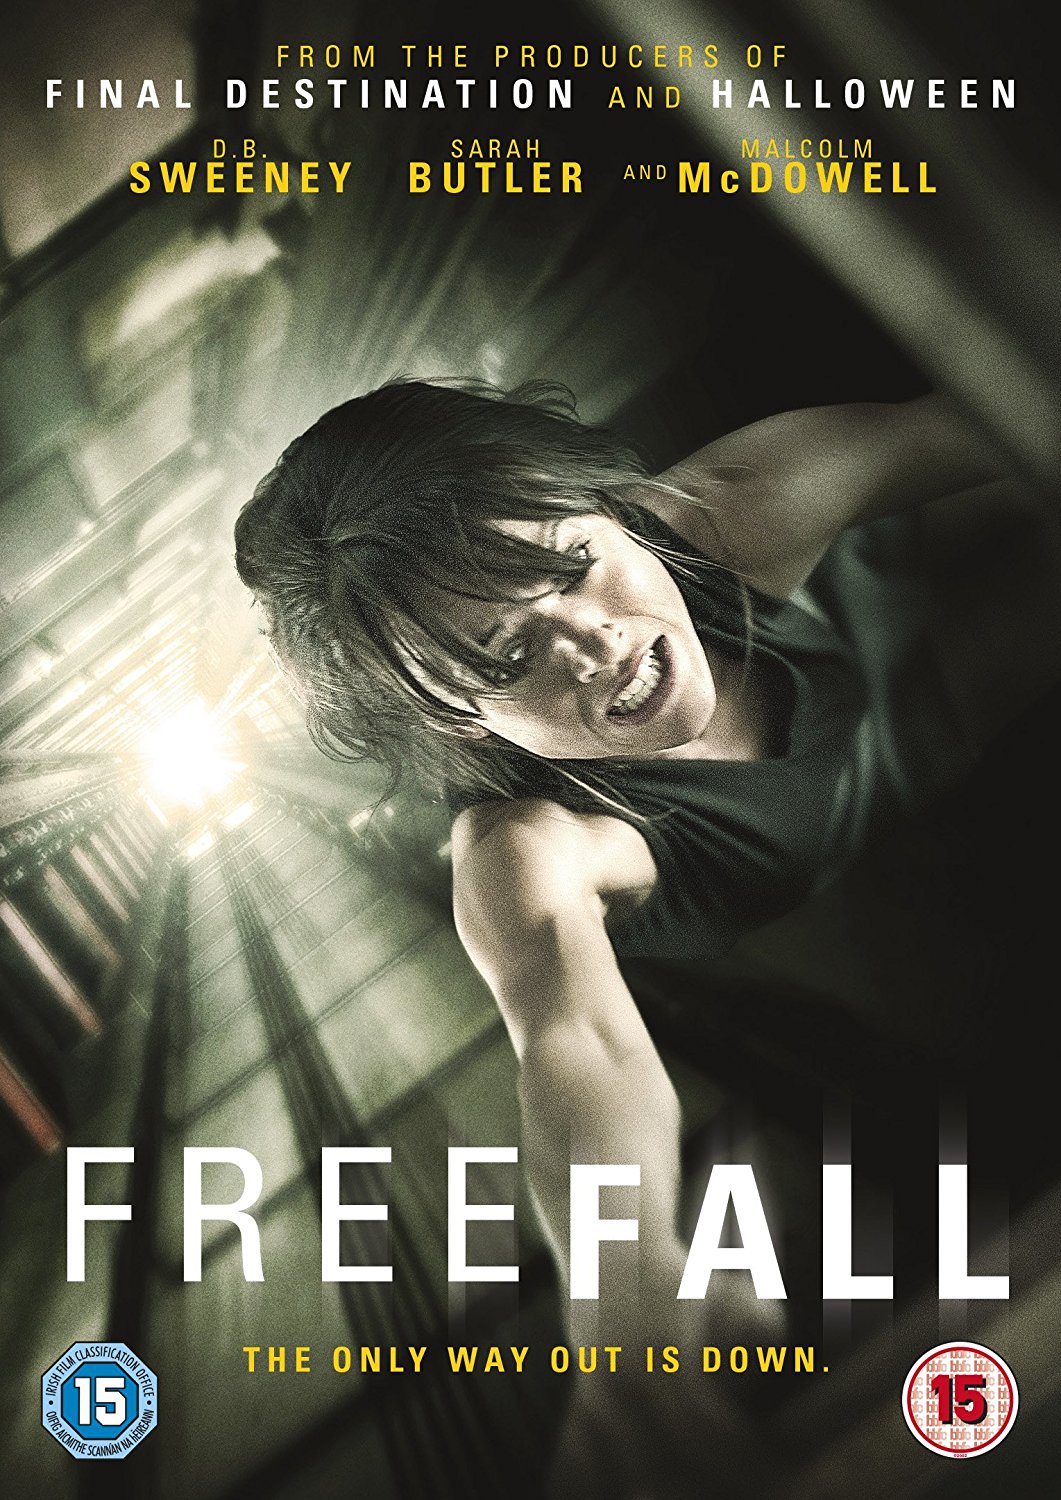 Free Fall (DVD)